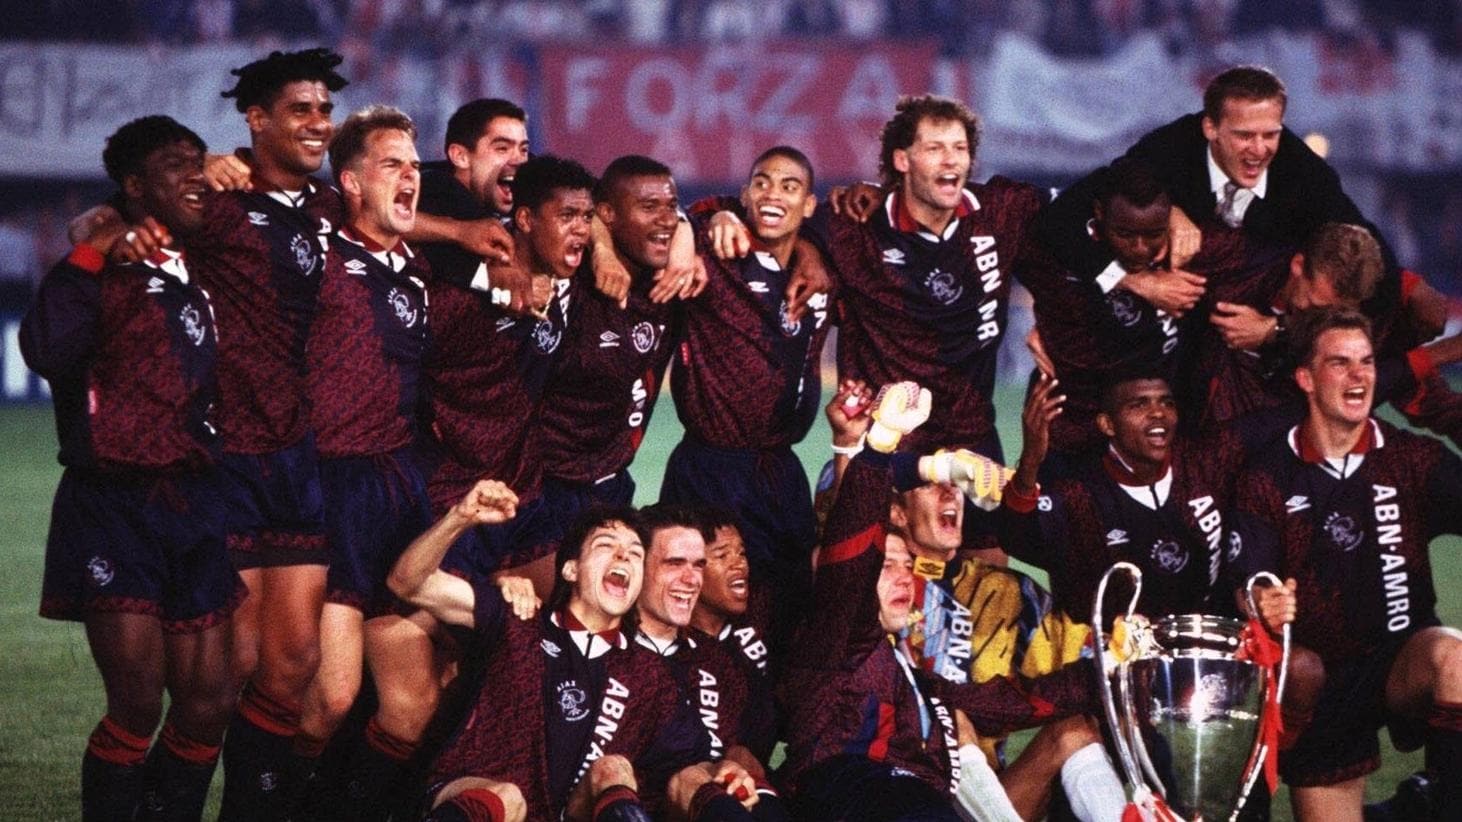 Van Gaal retires? Ajax's golden boys of '95 | UEFA Champions ...